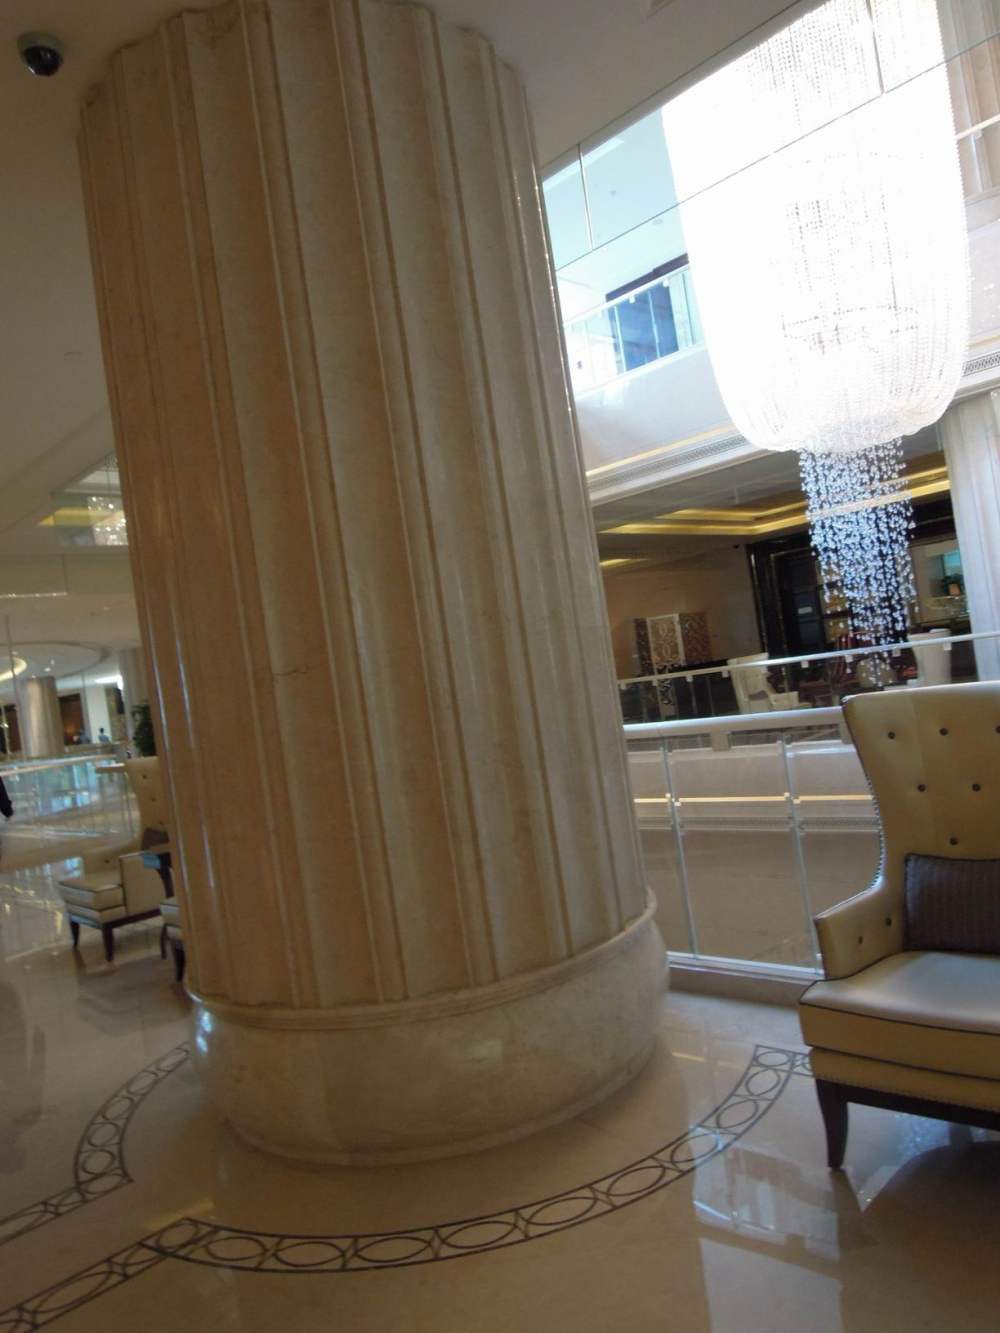 上海华尔道夫酒店(The Waldorf Astoria OnTheBund)(HBA)10.9第10页更新_调整大小 DSCN5352.JPG